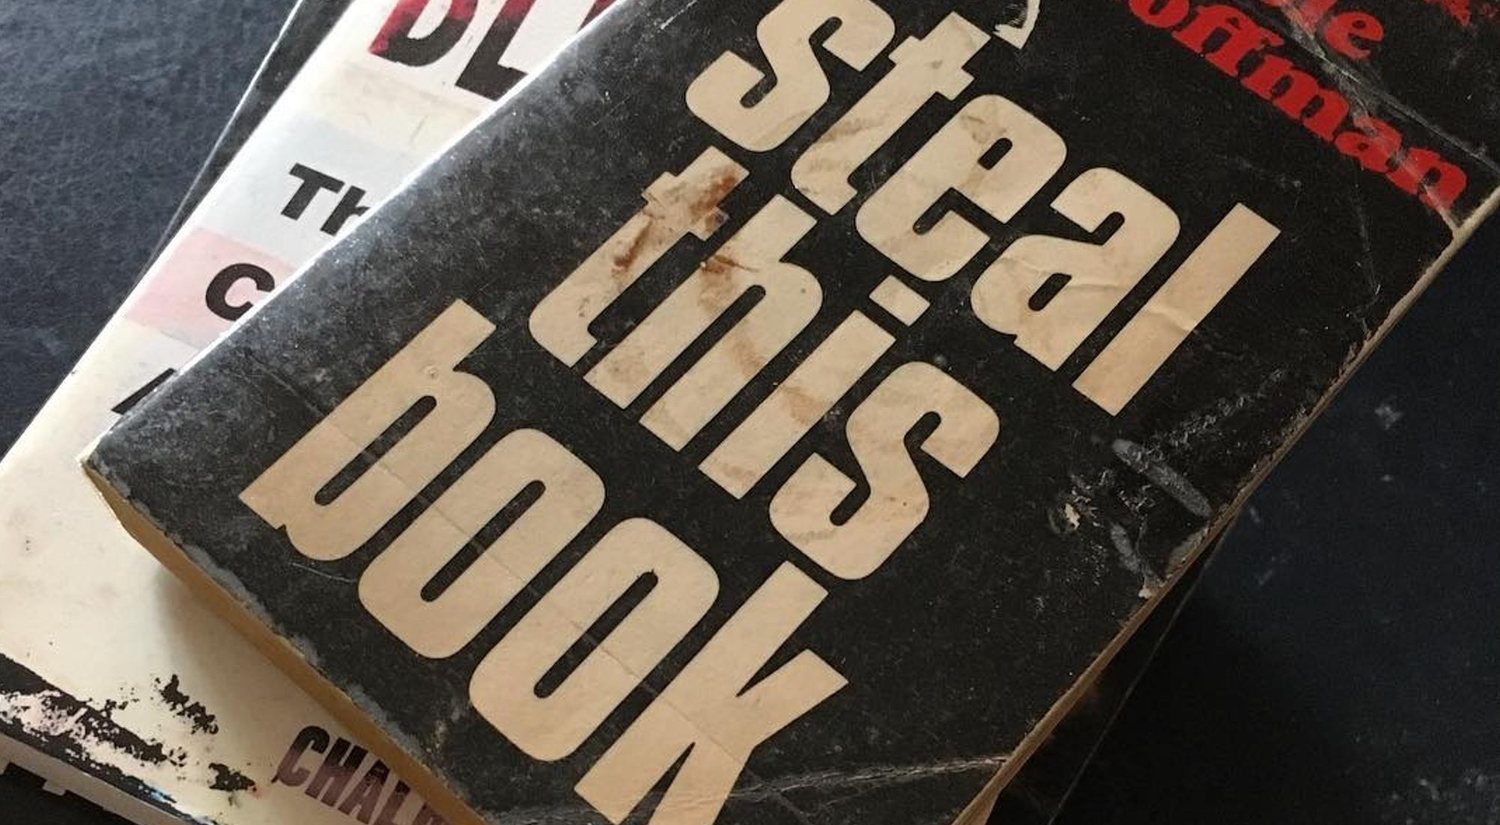 Libros polémicos: 'El libro de cocina del anarquista' y 'Roba este libro', los manuales subversivos de los 70